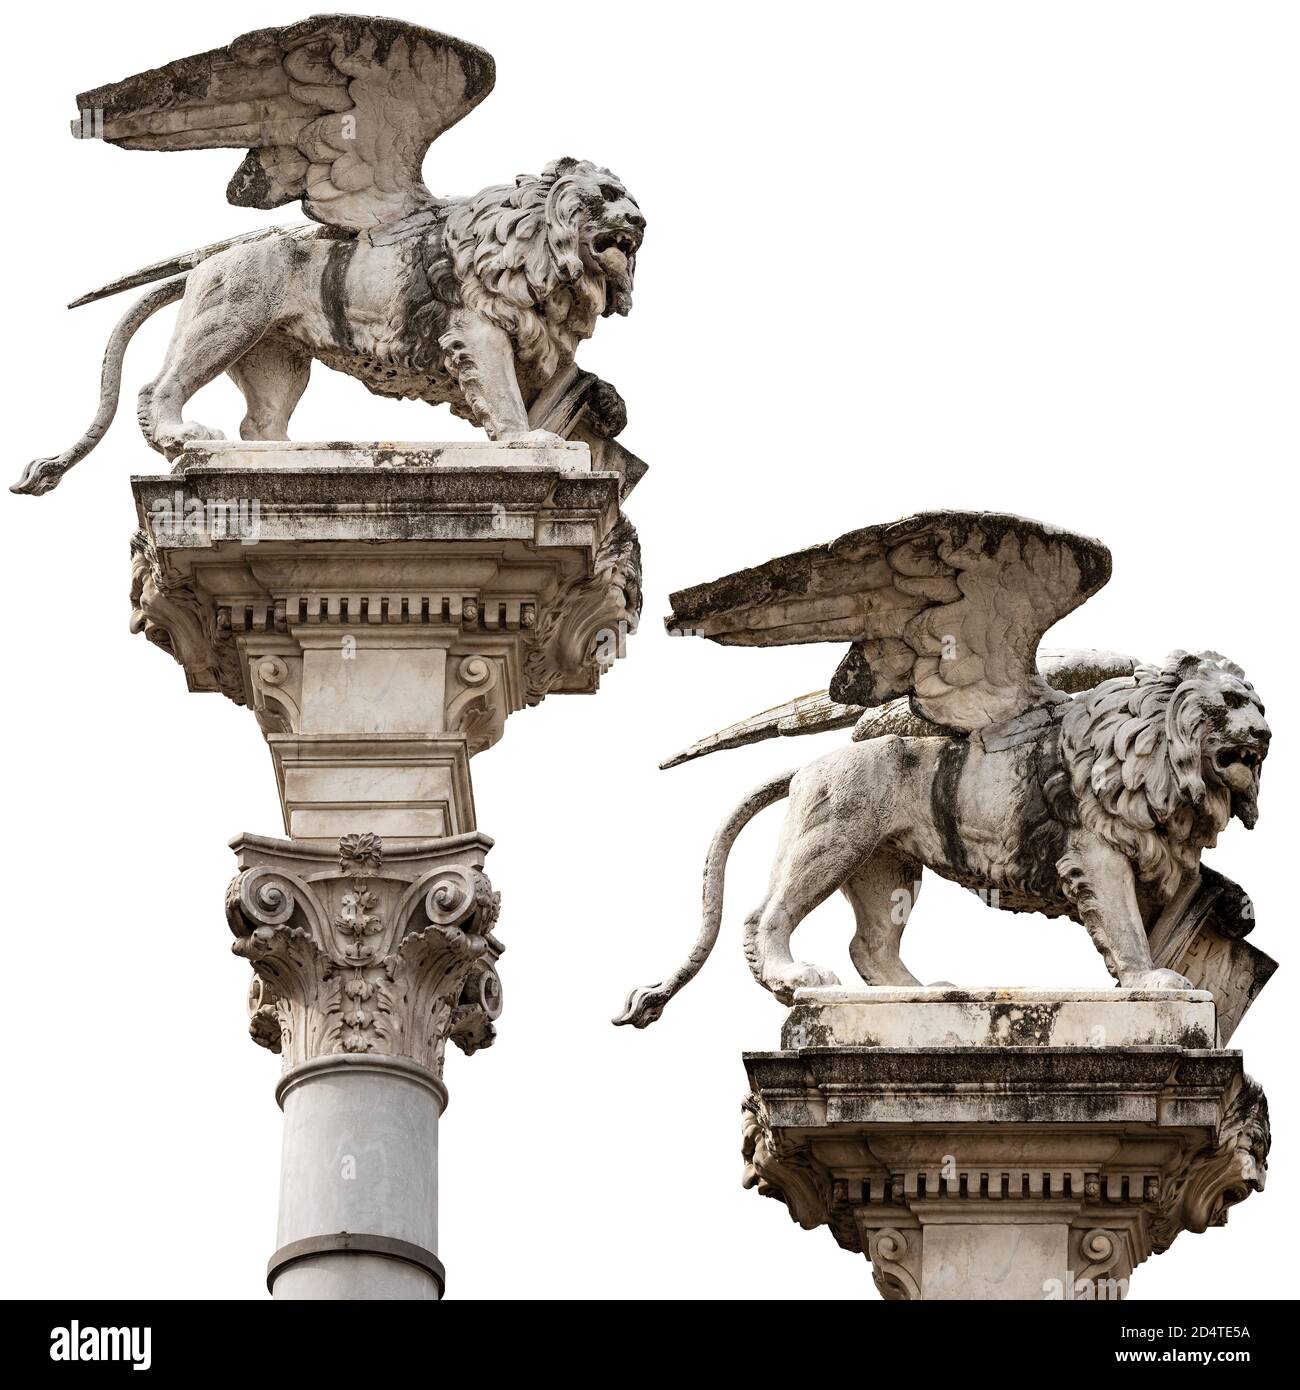 Statua in marmo del Leone alato di San Marco isolato su sfondo bianco. Simbolo dell'evangelista, della Repubblica Veneta e della Regione Veneto. Foto Stock